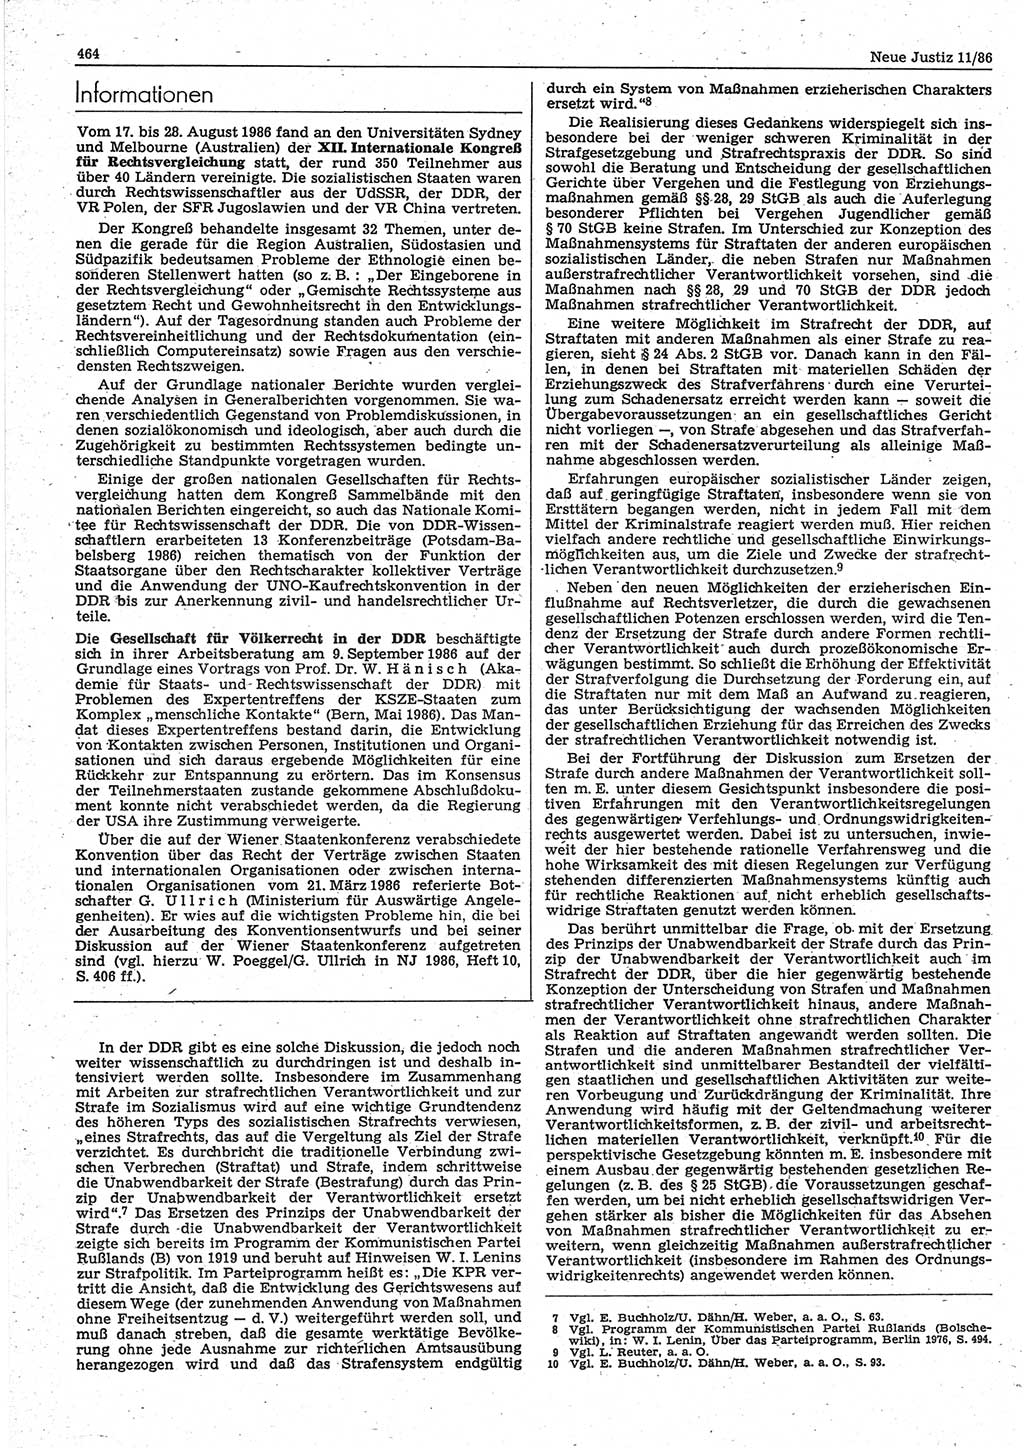 Neue Justiz (NJ), Zeitschrift für sozialistisches Recht und Gesetzlichkeit [Deutsche Demokratische Republik (DDR)], 40. Jahrgang 1986, Seite 464 (NJ DDR 1986, S. 464)